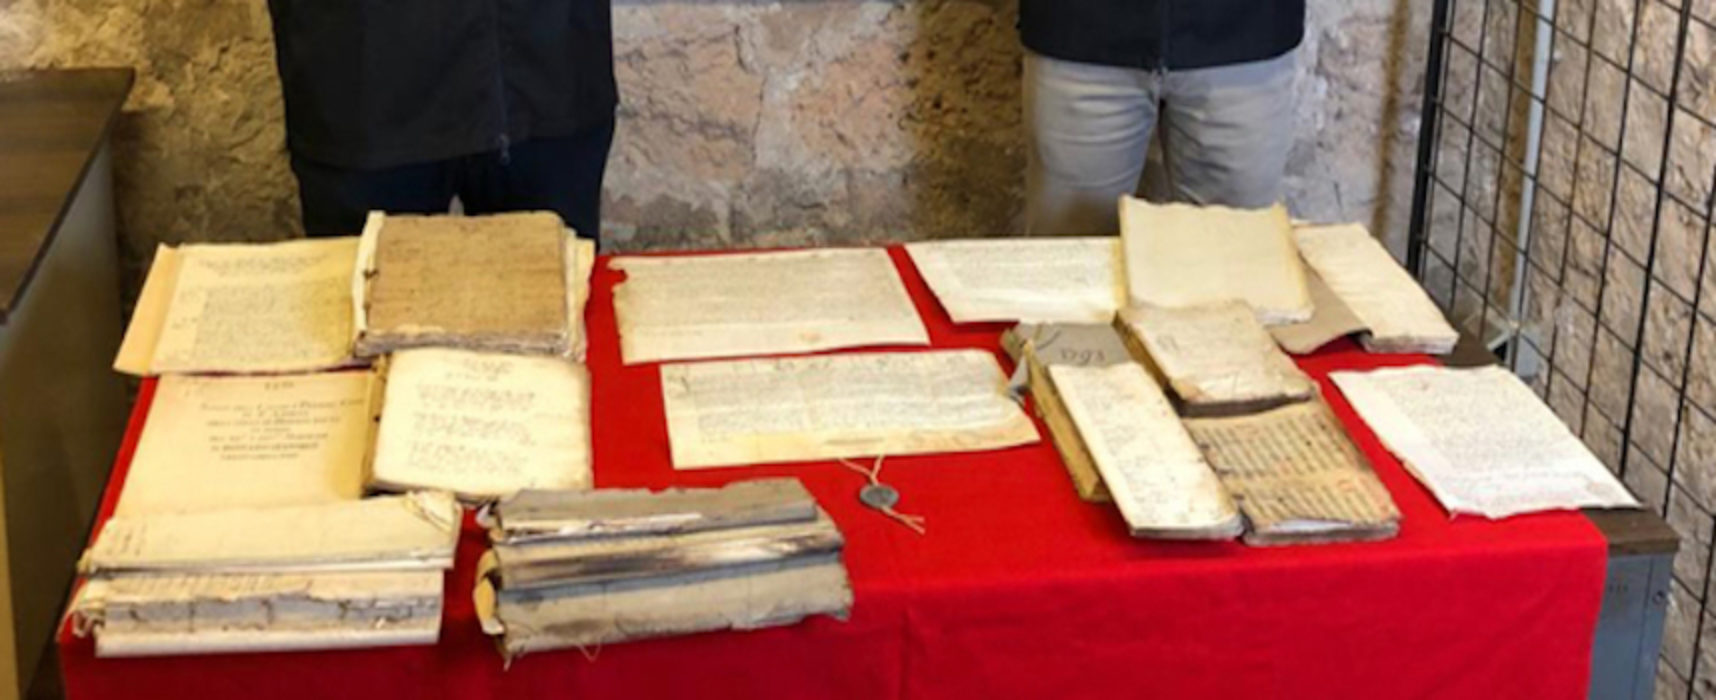 Rinvenuti documenti trafugati da archivio diocesano di Bisceglie per valore di 400mila euro